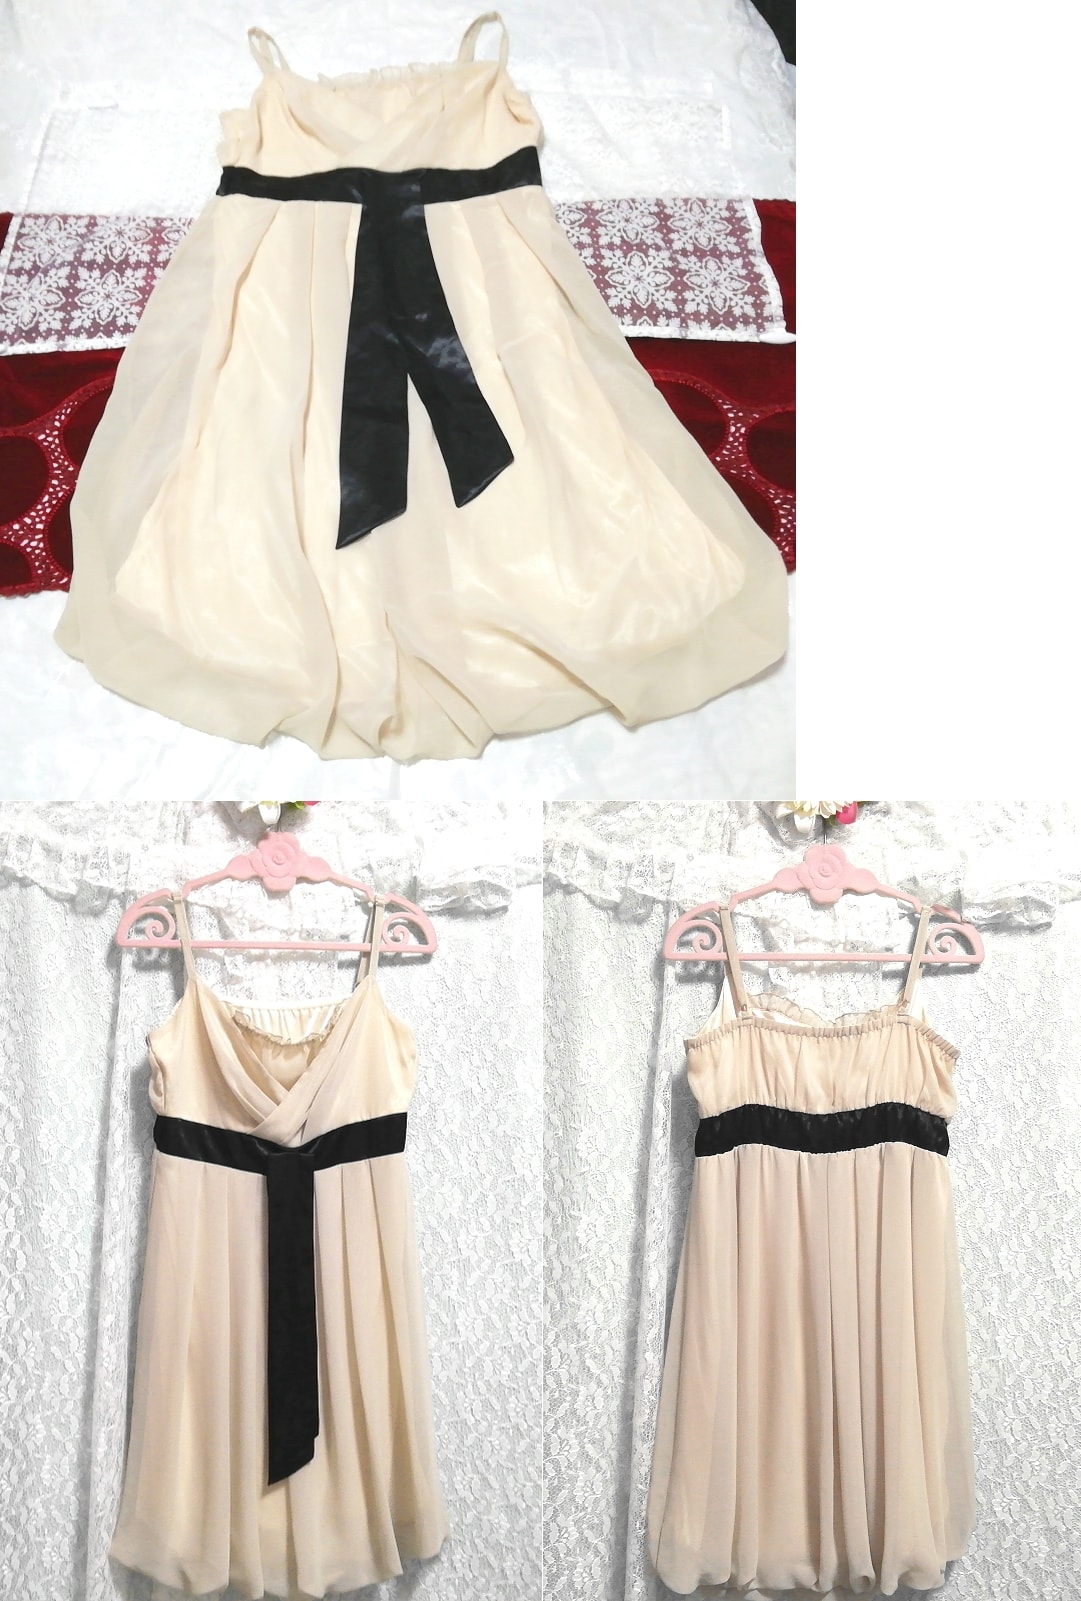 Vestido de gasa de una pieza camisola camisón negligee con cinturón negro y blanco floral, falda hasta la rodilla, talla m